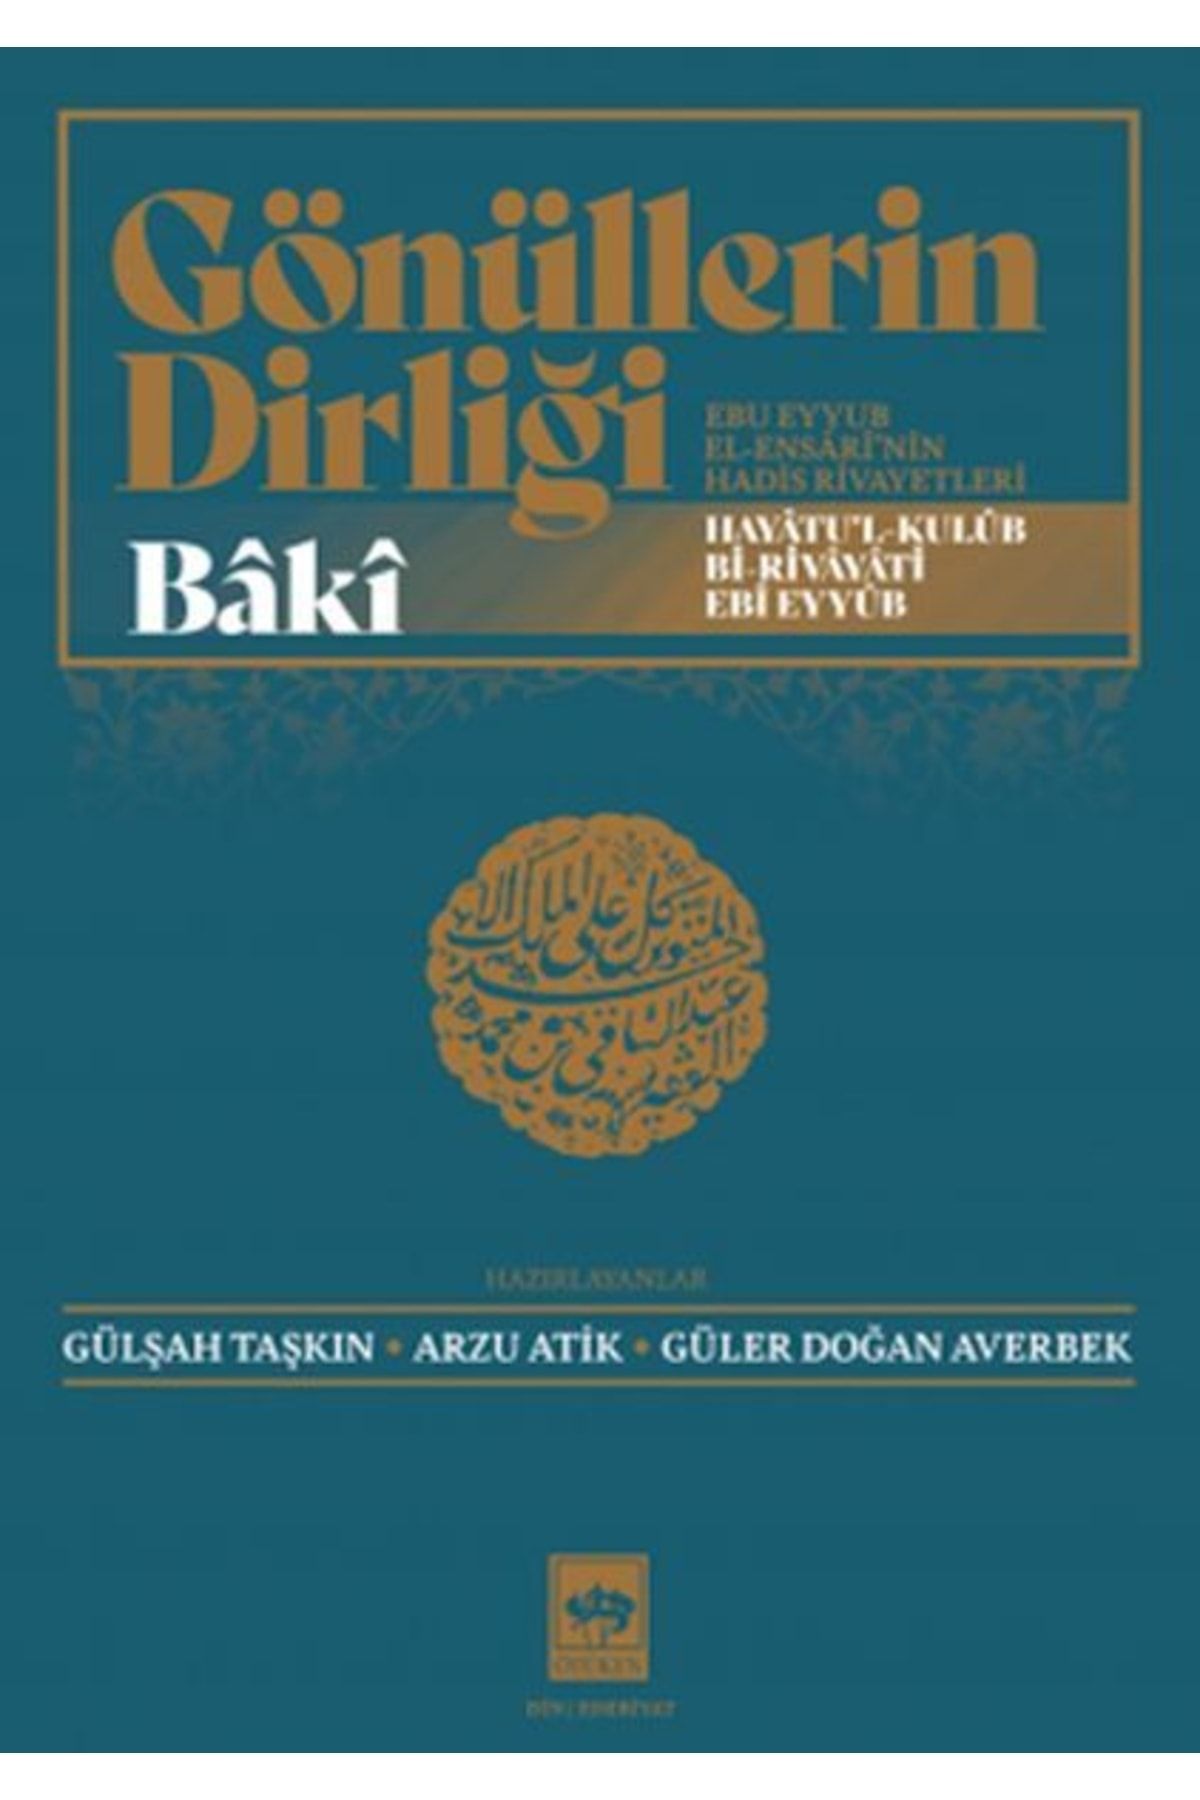 Ötüken Yayınları Gönüllerin Dirliği - Ebu Eyyub El-ensârî'nin Hadis Ve Rivayetleri